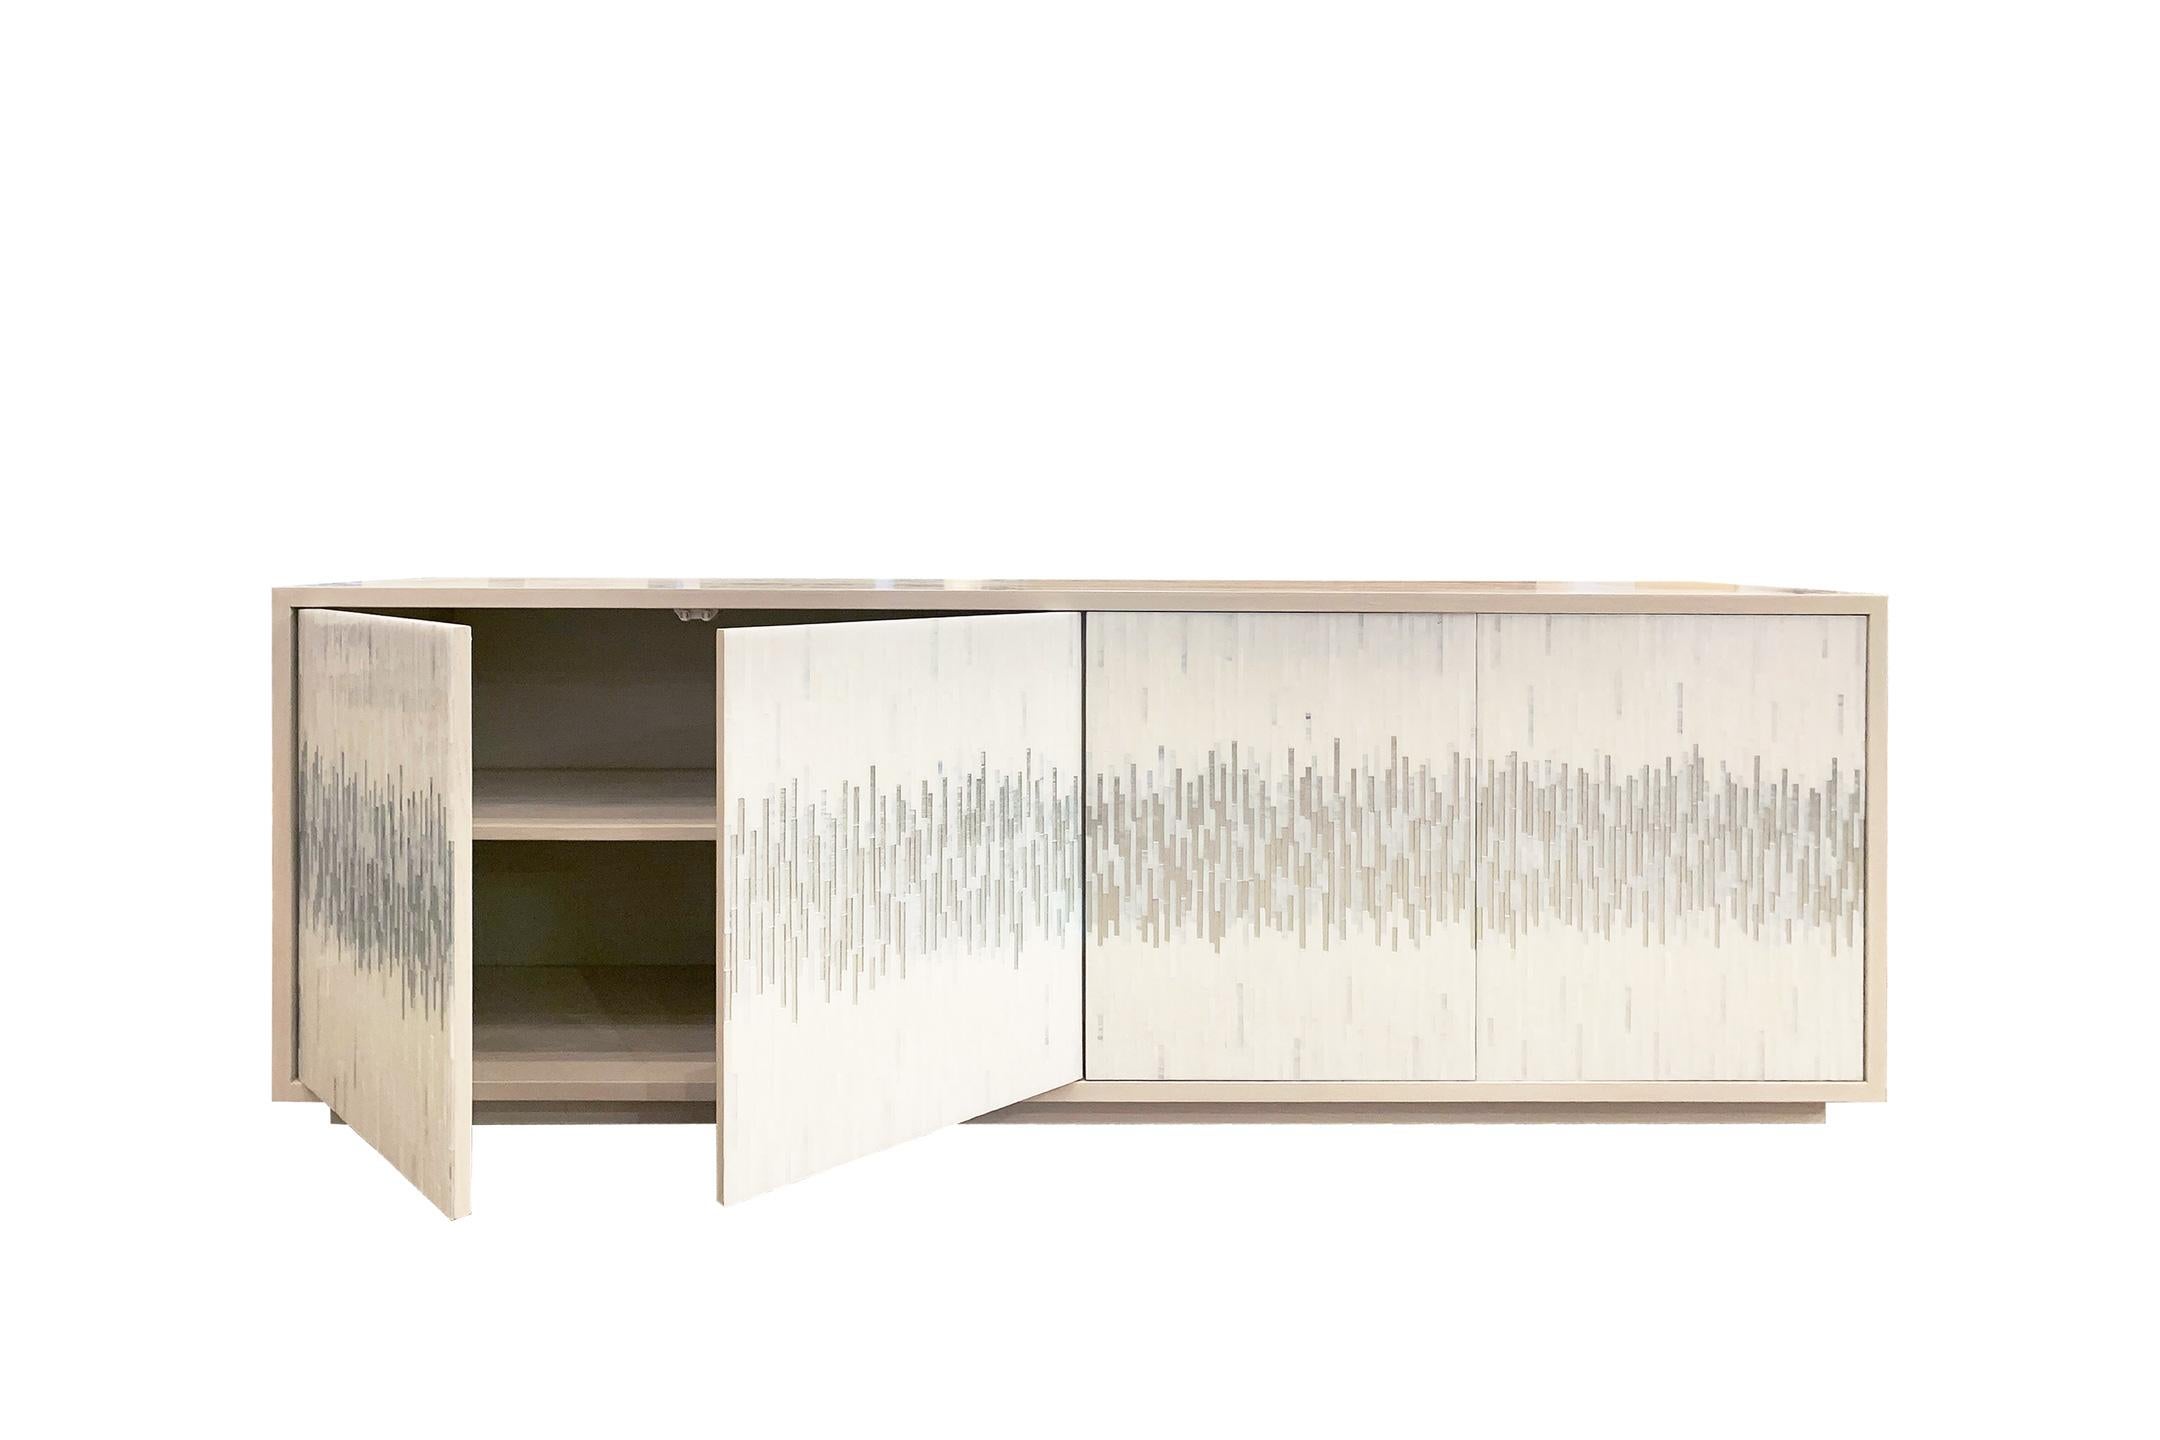 Das Platform Wave Buffet von Ercole Home hat eine 4-türige Front, mit gewaschener elfenbeinfarbener Holzoberfläche auf Eiche. Handgeschliffene Glasmosaike in eisigem Weiß und silbernem, hauchdünnem Weißsilber verzieren die Oberfläche in einem